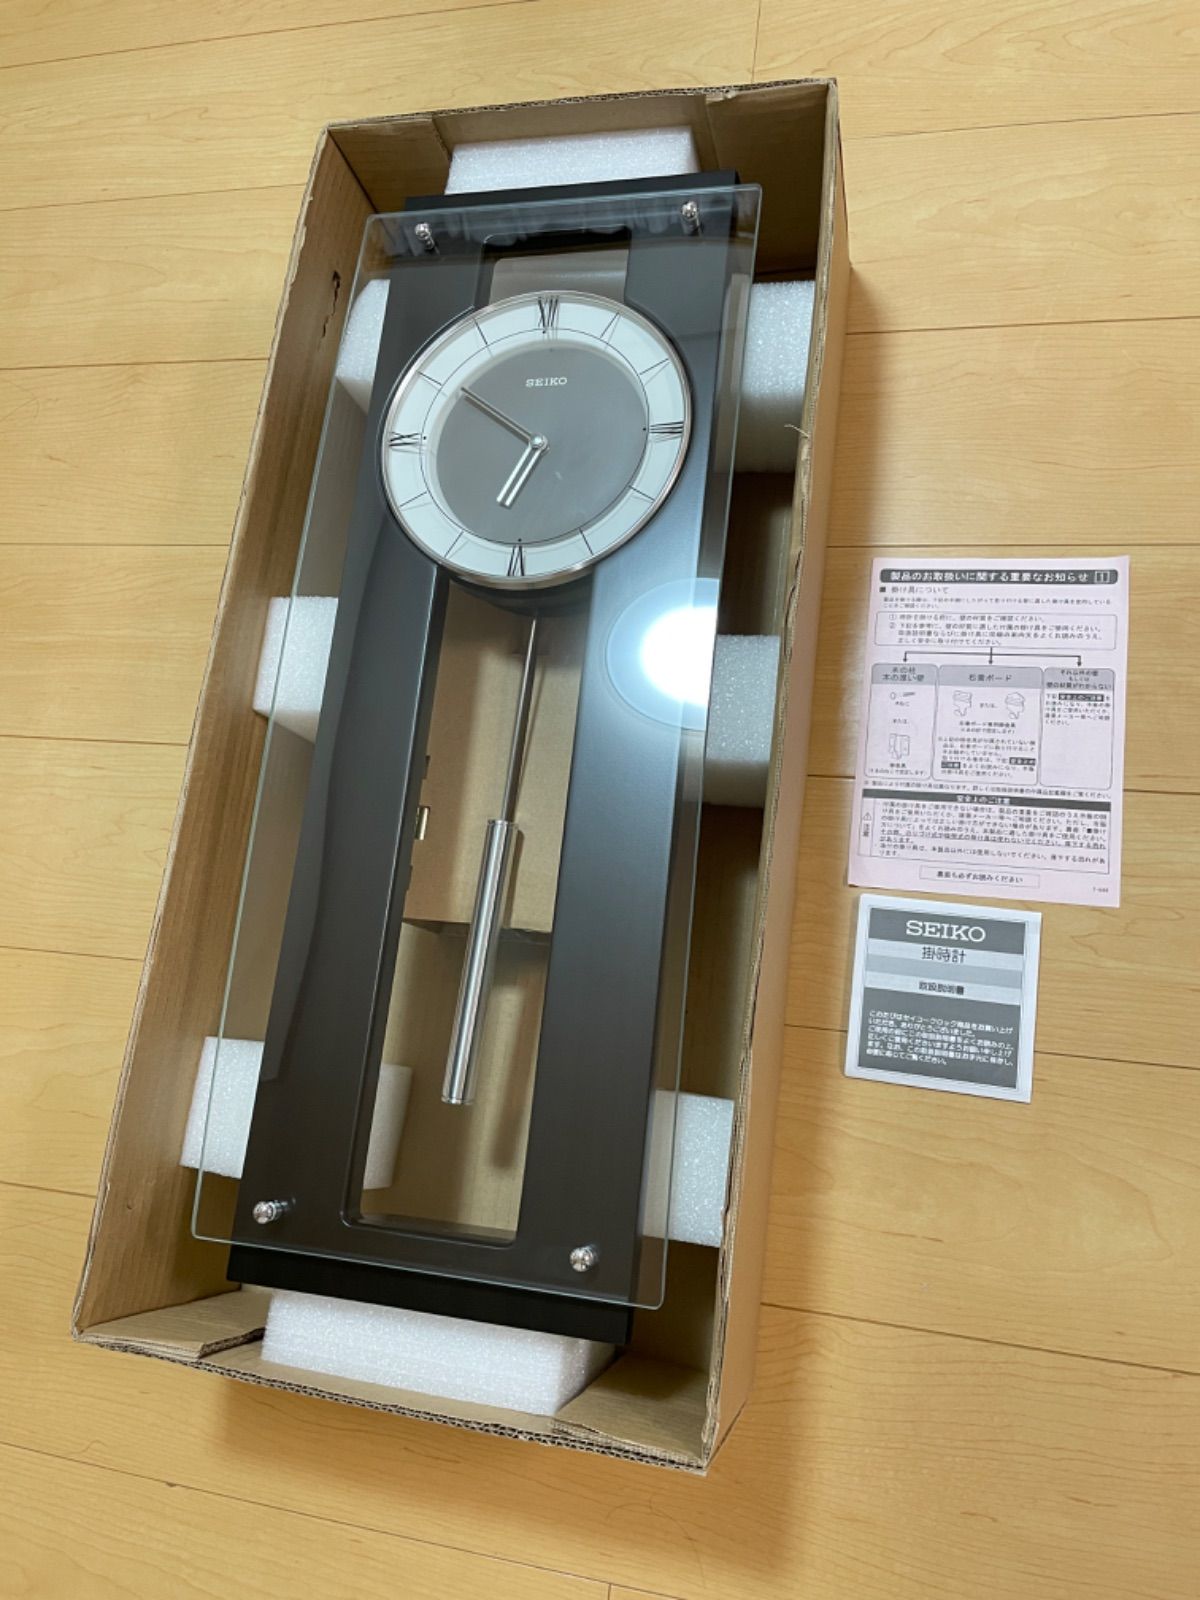 【特注製作】訳あり品 セイコー高級掛時計 定価25,000円 PH450B アナログ